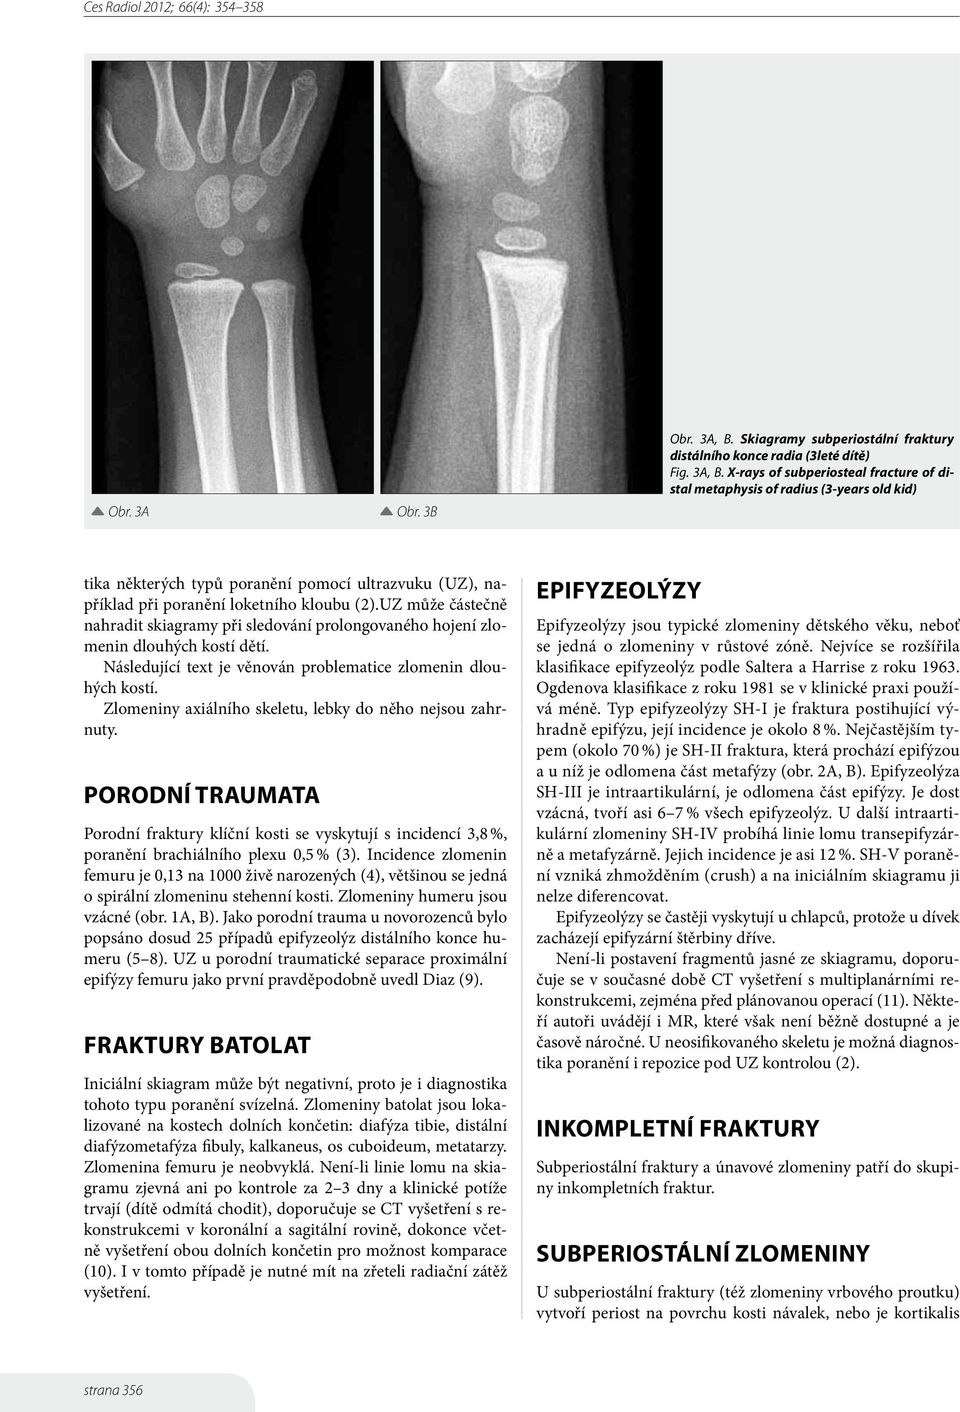 X-rays of subperiosteal fracture of distal metaphysis of radius (3-years old kid) tika některých typů poranění pomocí ultrazvuku (UZ), například při poranění loketního kloubu (2).